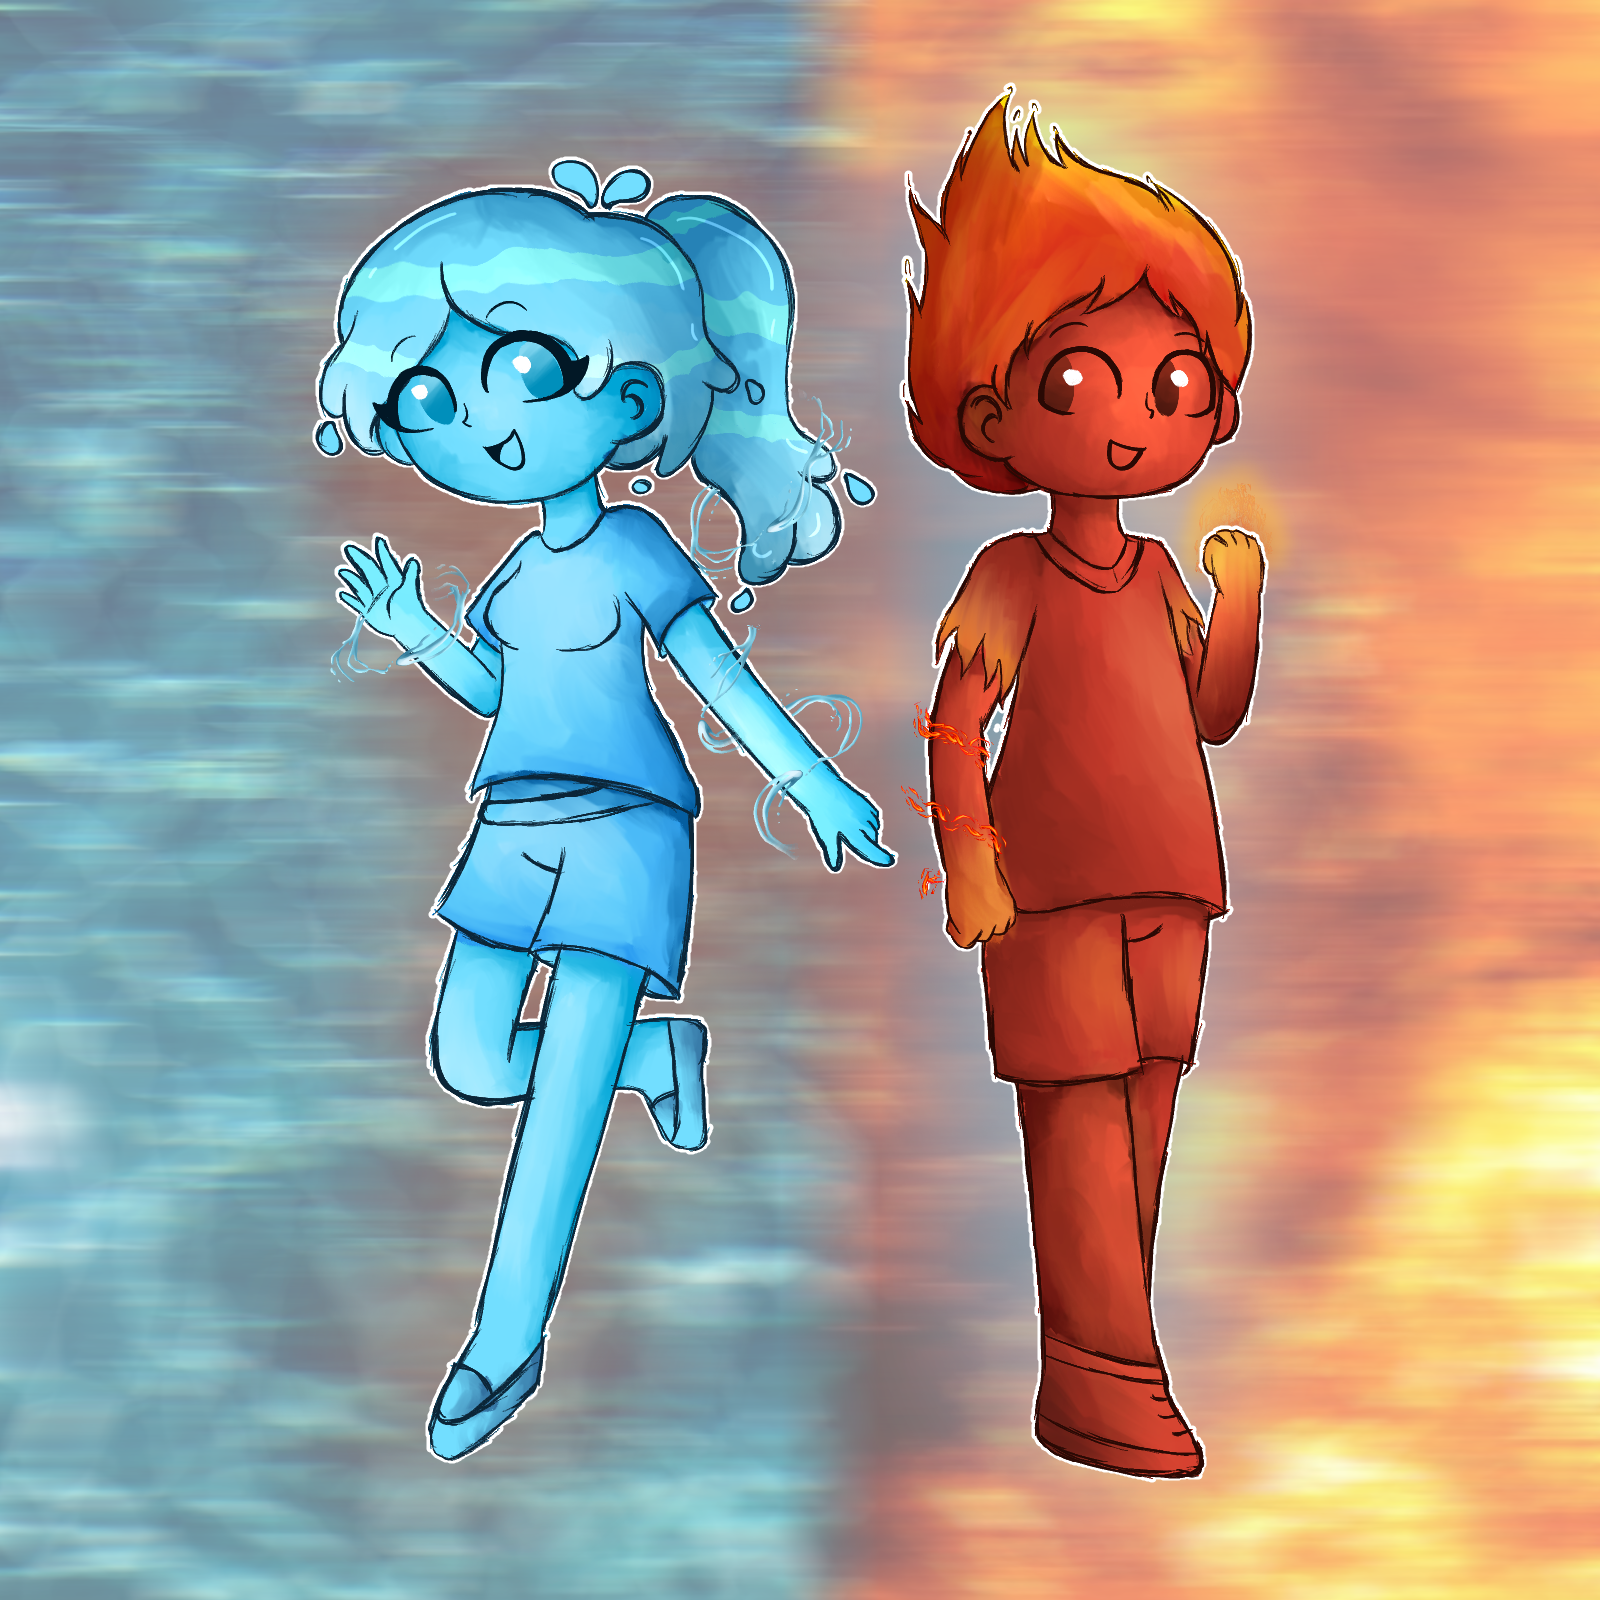 Firegirl and Waterboy adventures